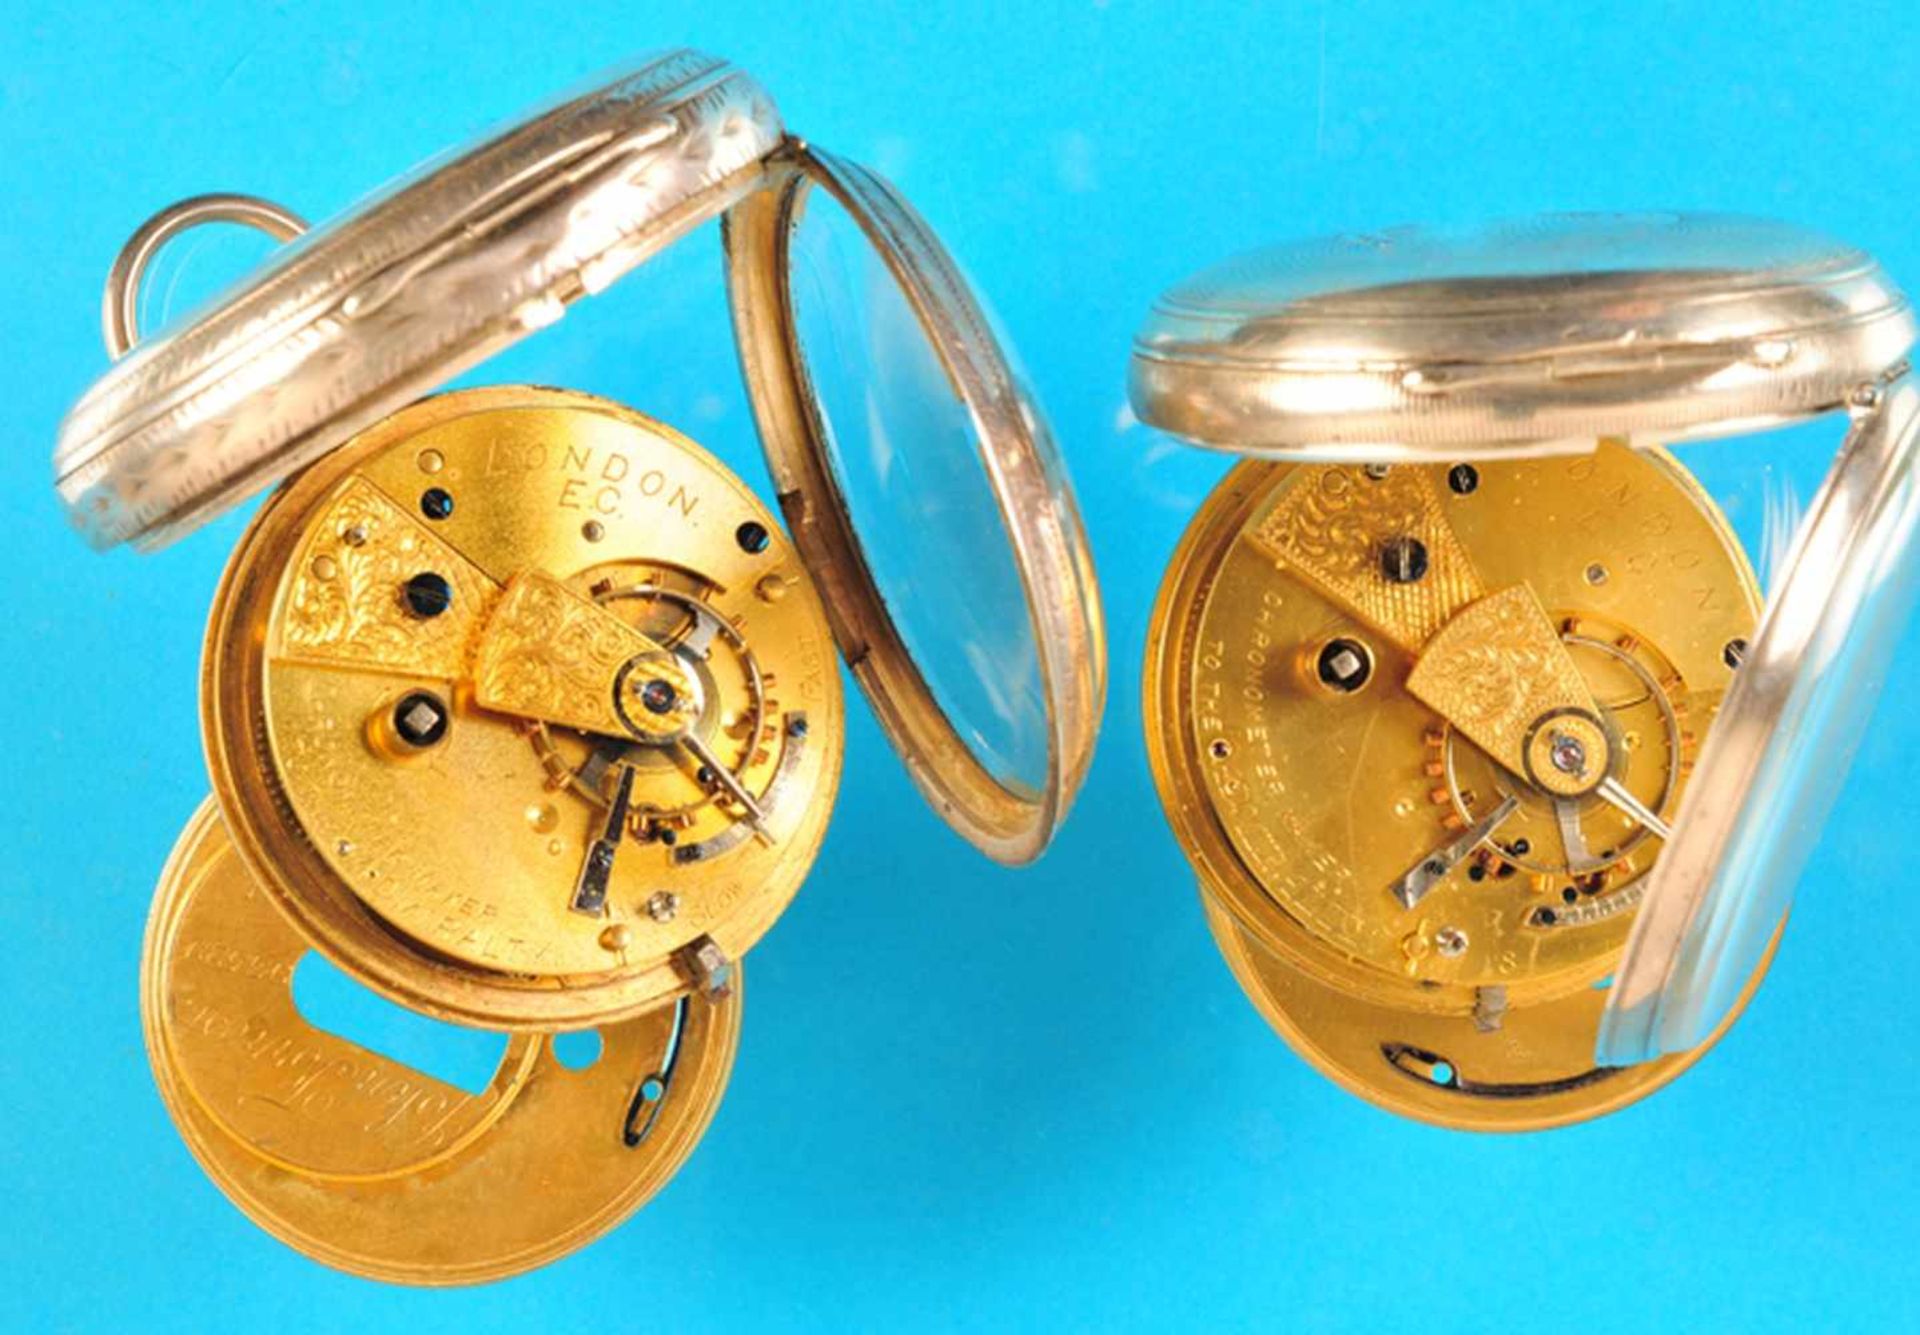 Bundle with 2 english silver pocket watchesKonvolut mit 2 englischen Silbertaschenuhren, - Bild 2 aus 2